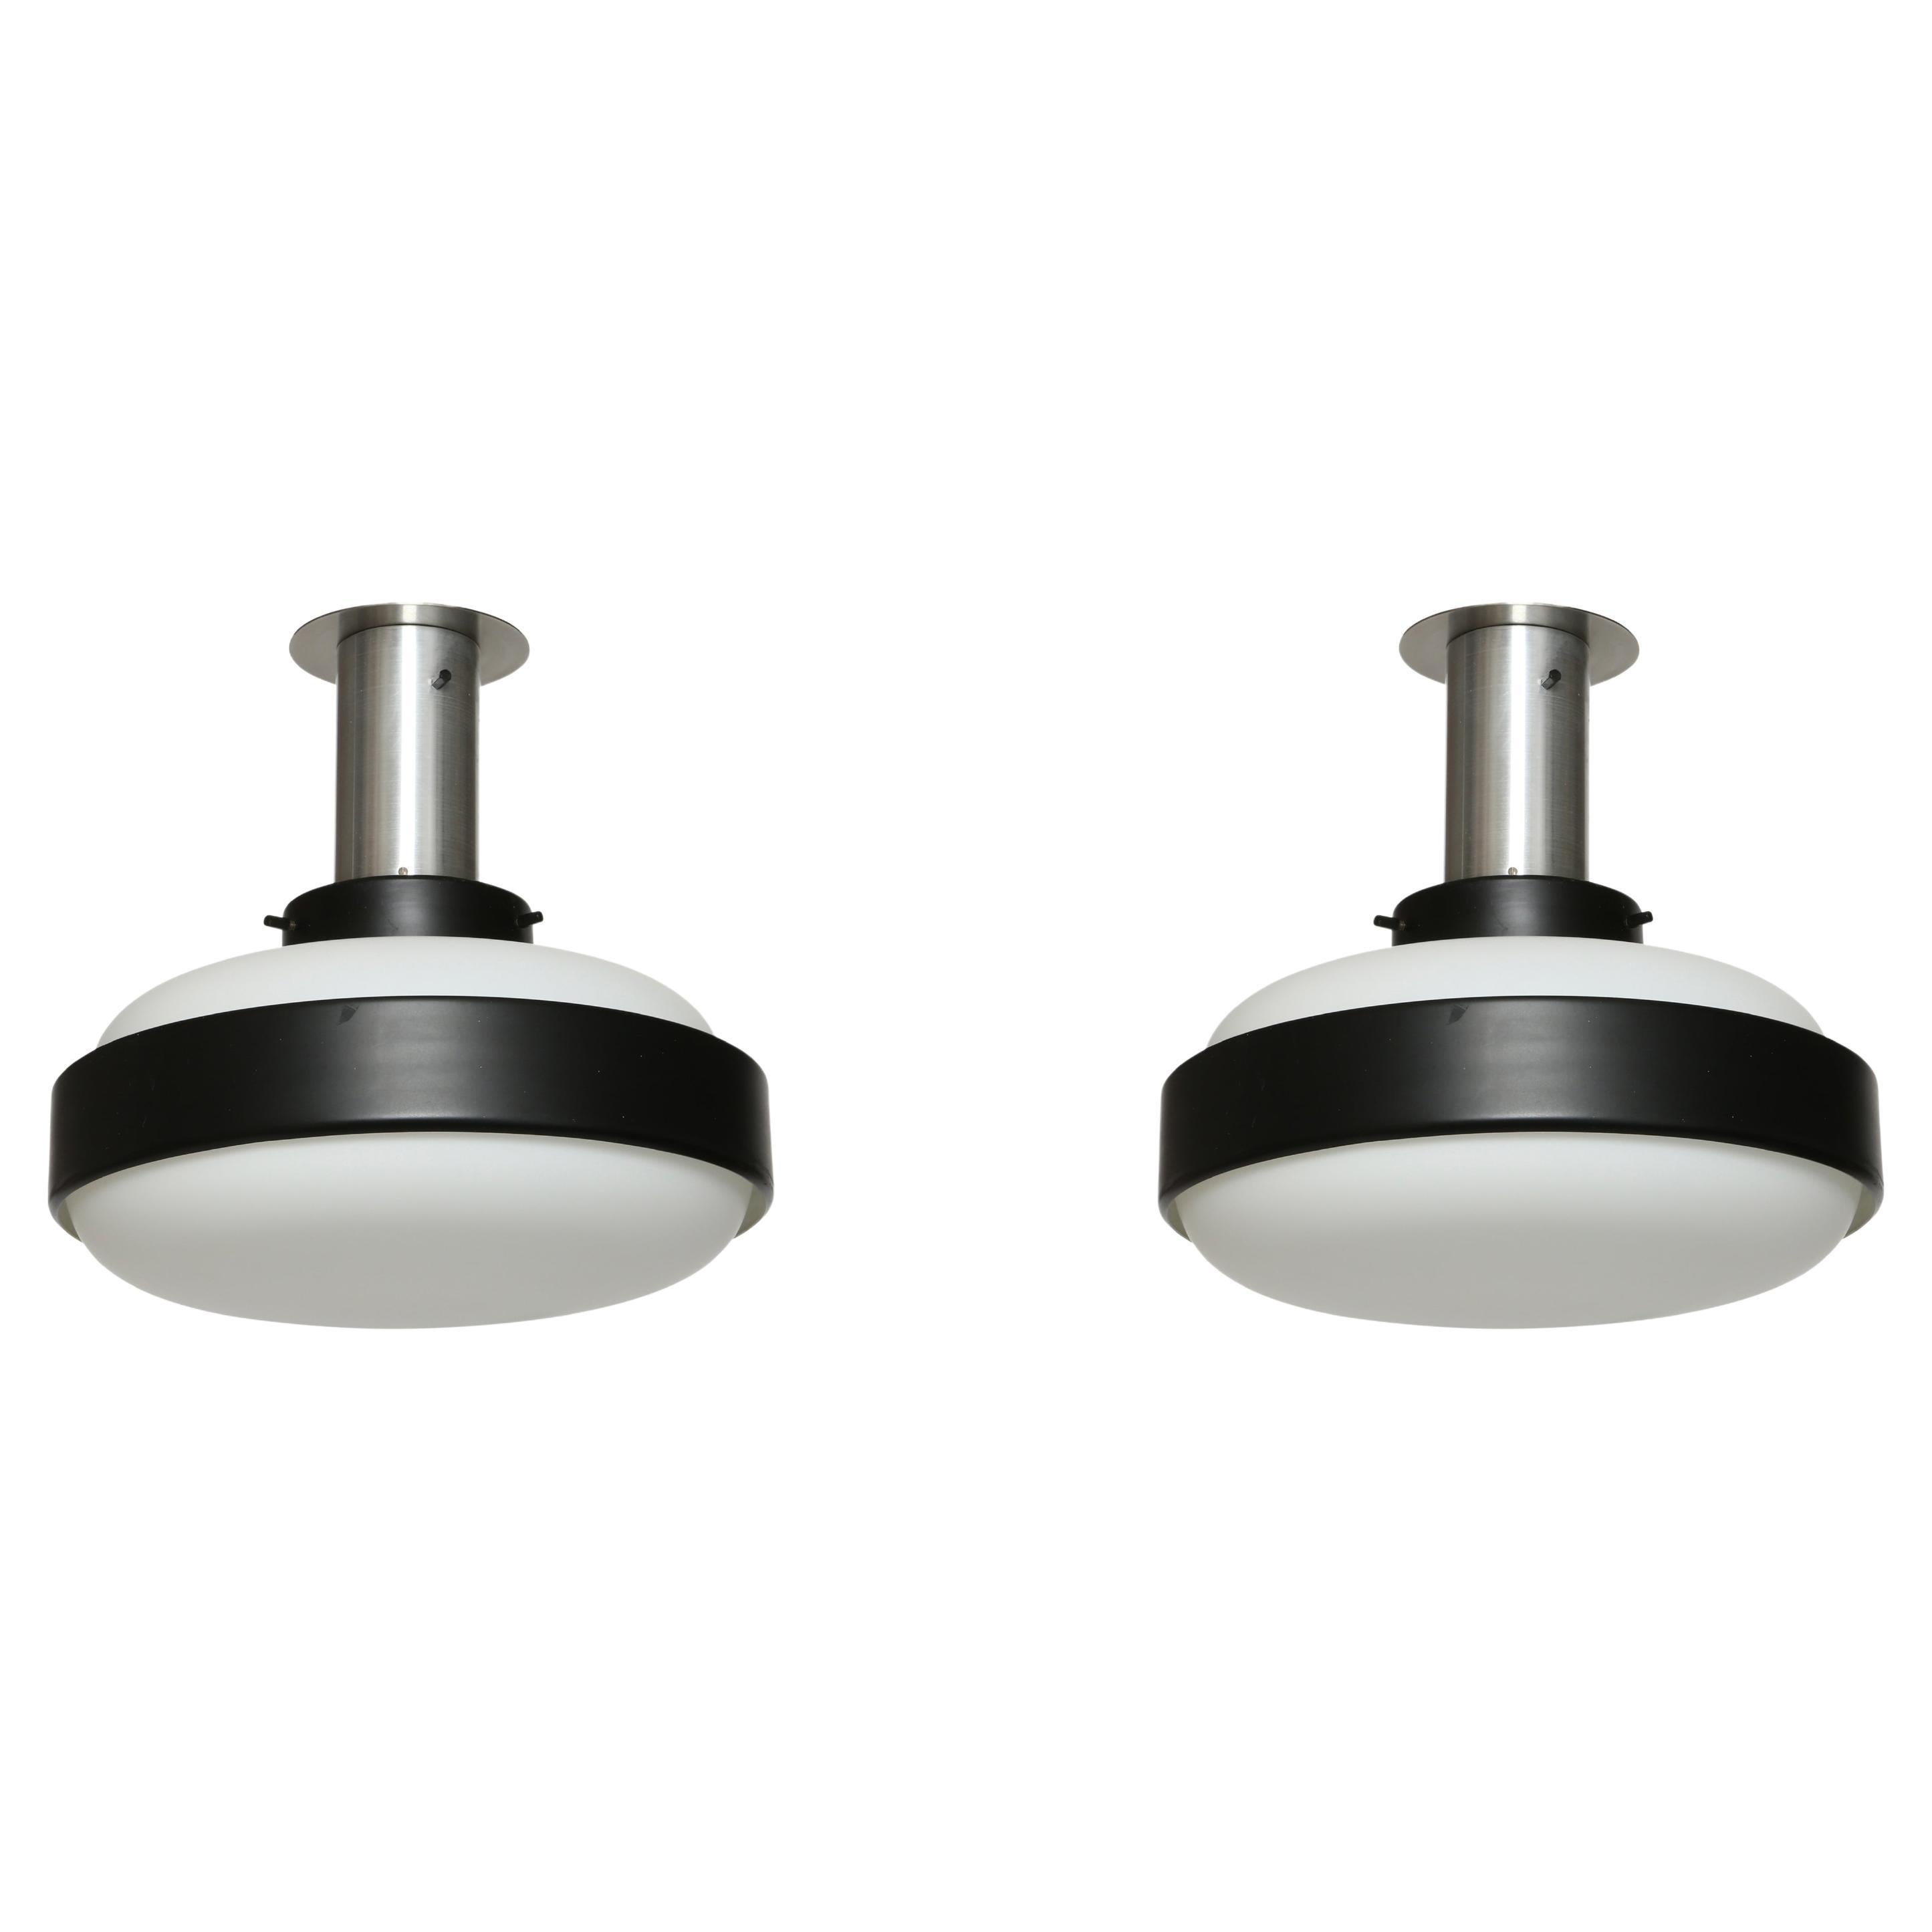 Stilnovo flush mounts ceiling lights, a pair